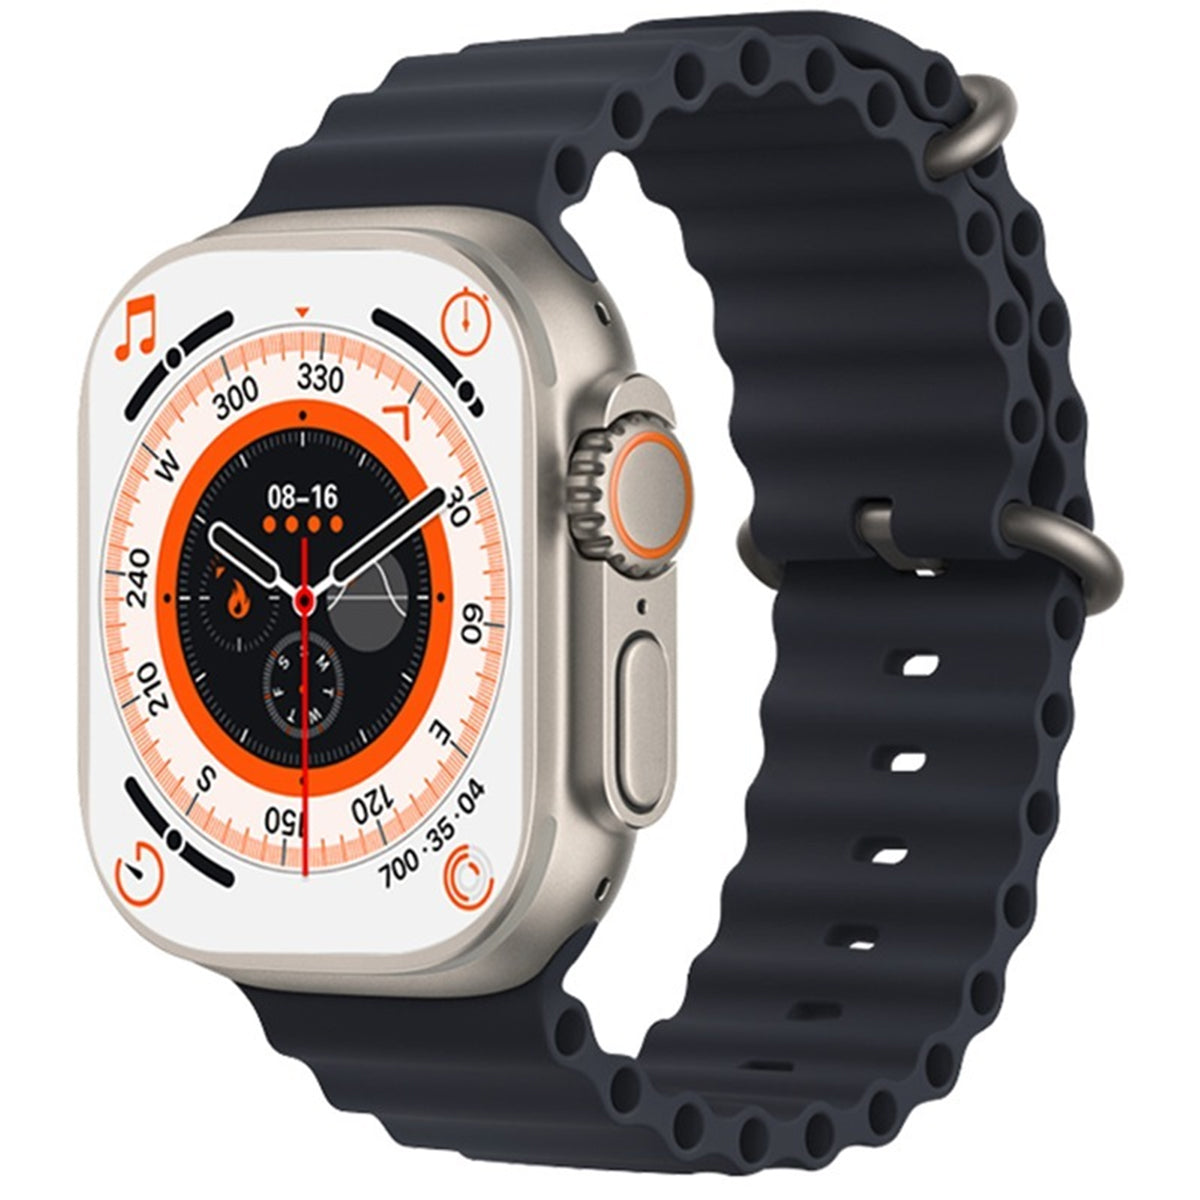 Fralugio Smart Watch Reloj Inteligente T800 Ultra Nfc Ips Hd